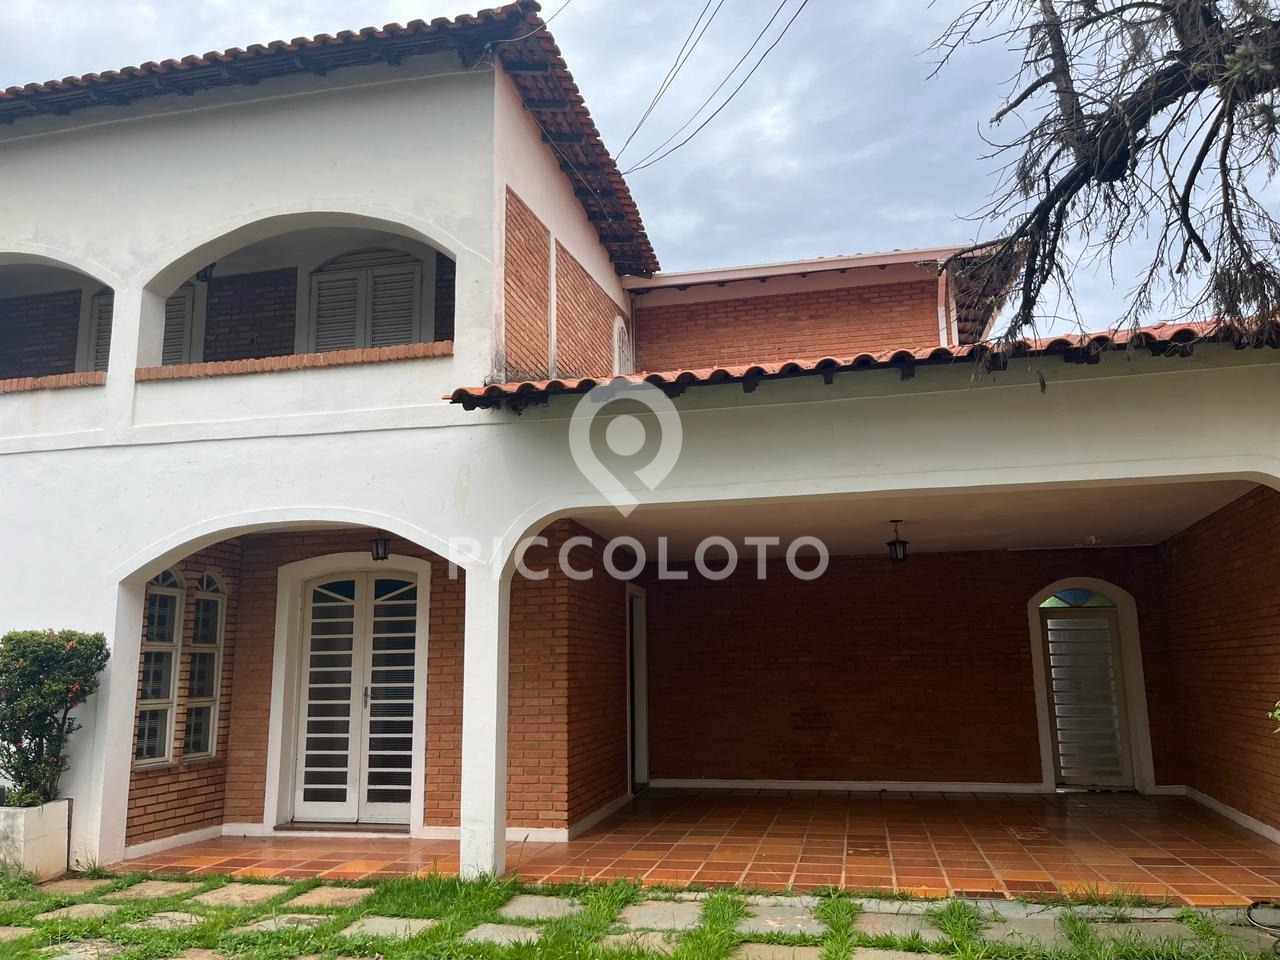 Piccoloto - Casa à venda no Jardim Guarani em Campinas